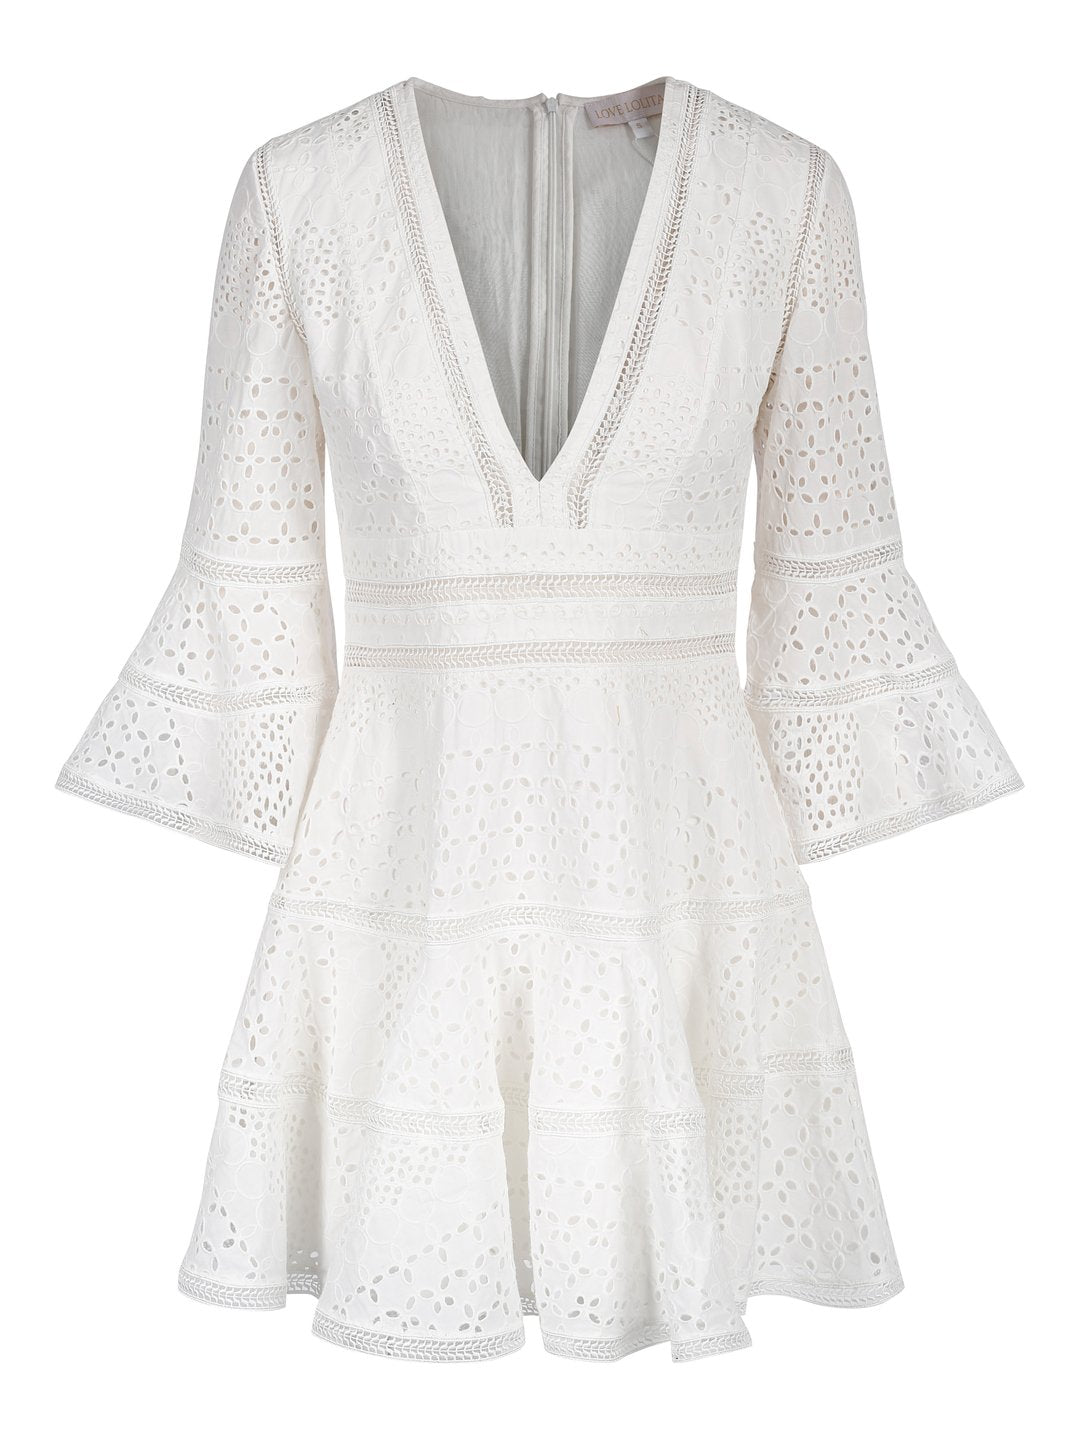 Millie Dress - White